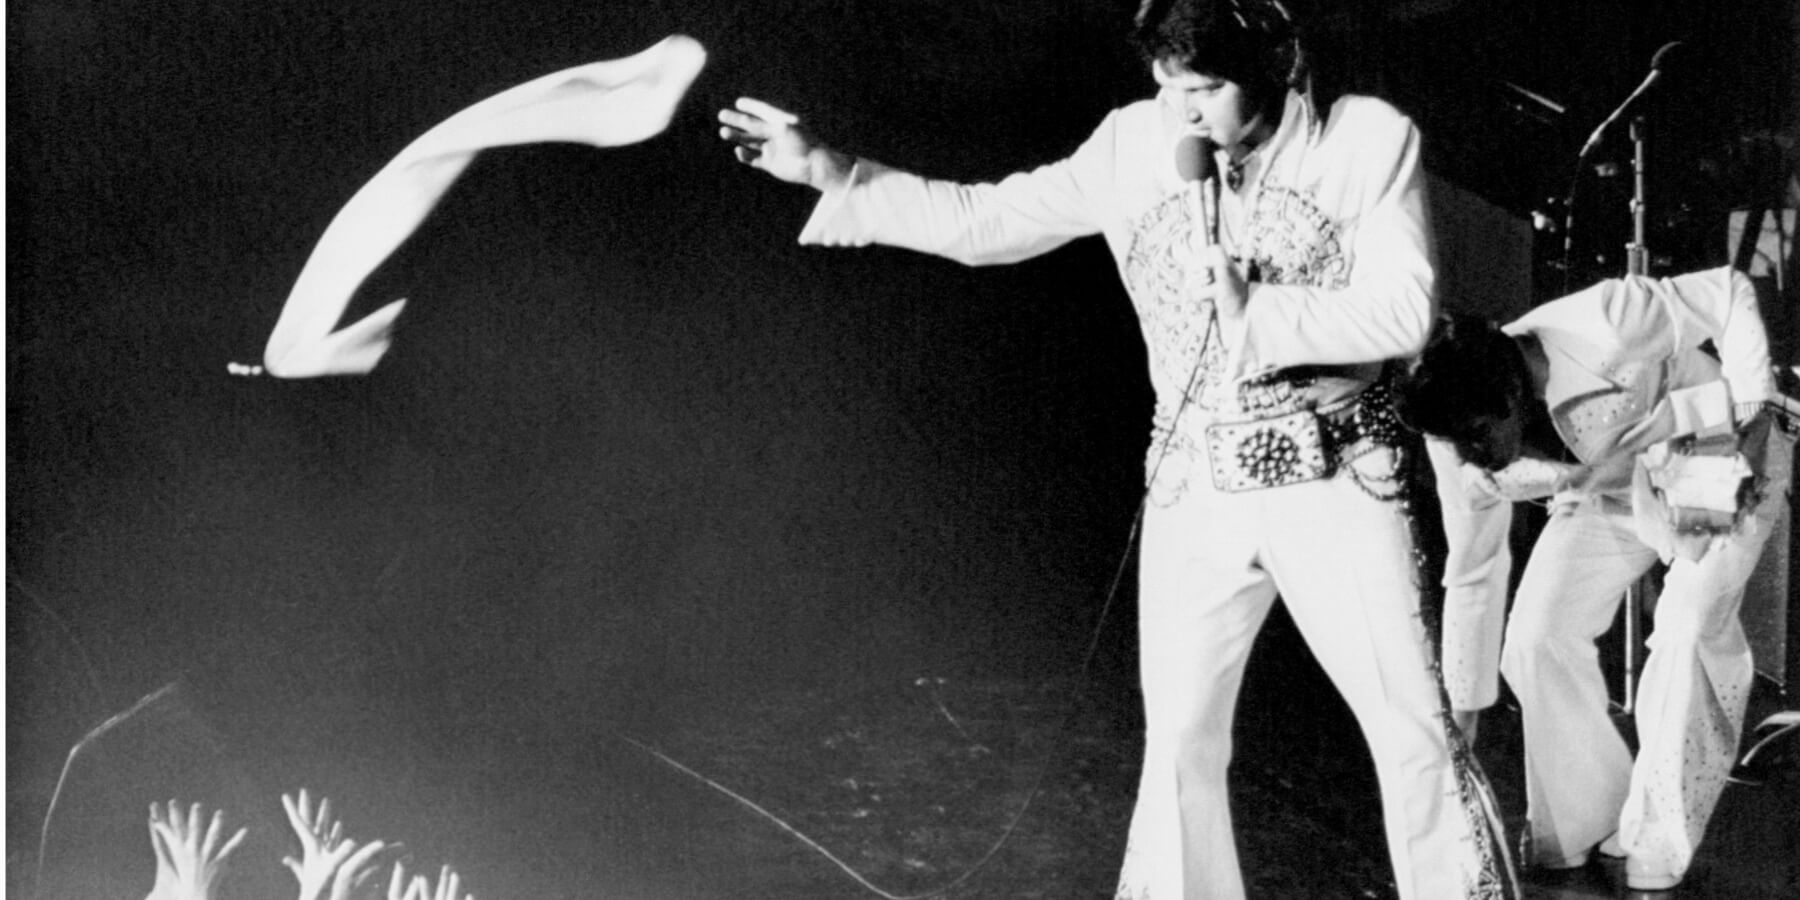 Elvis Presley in concert handing out scarves